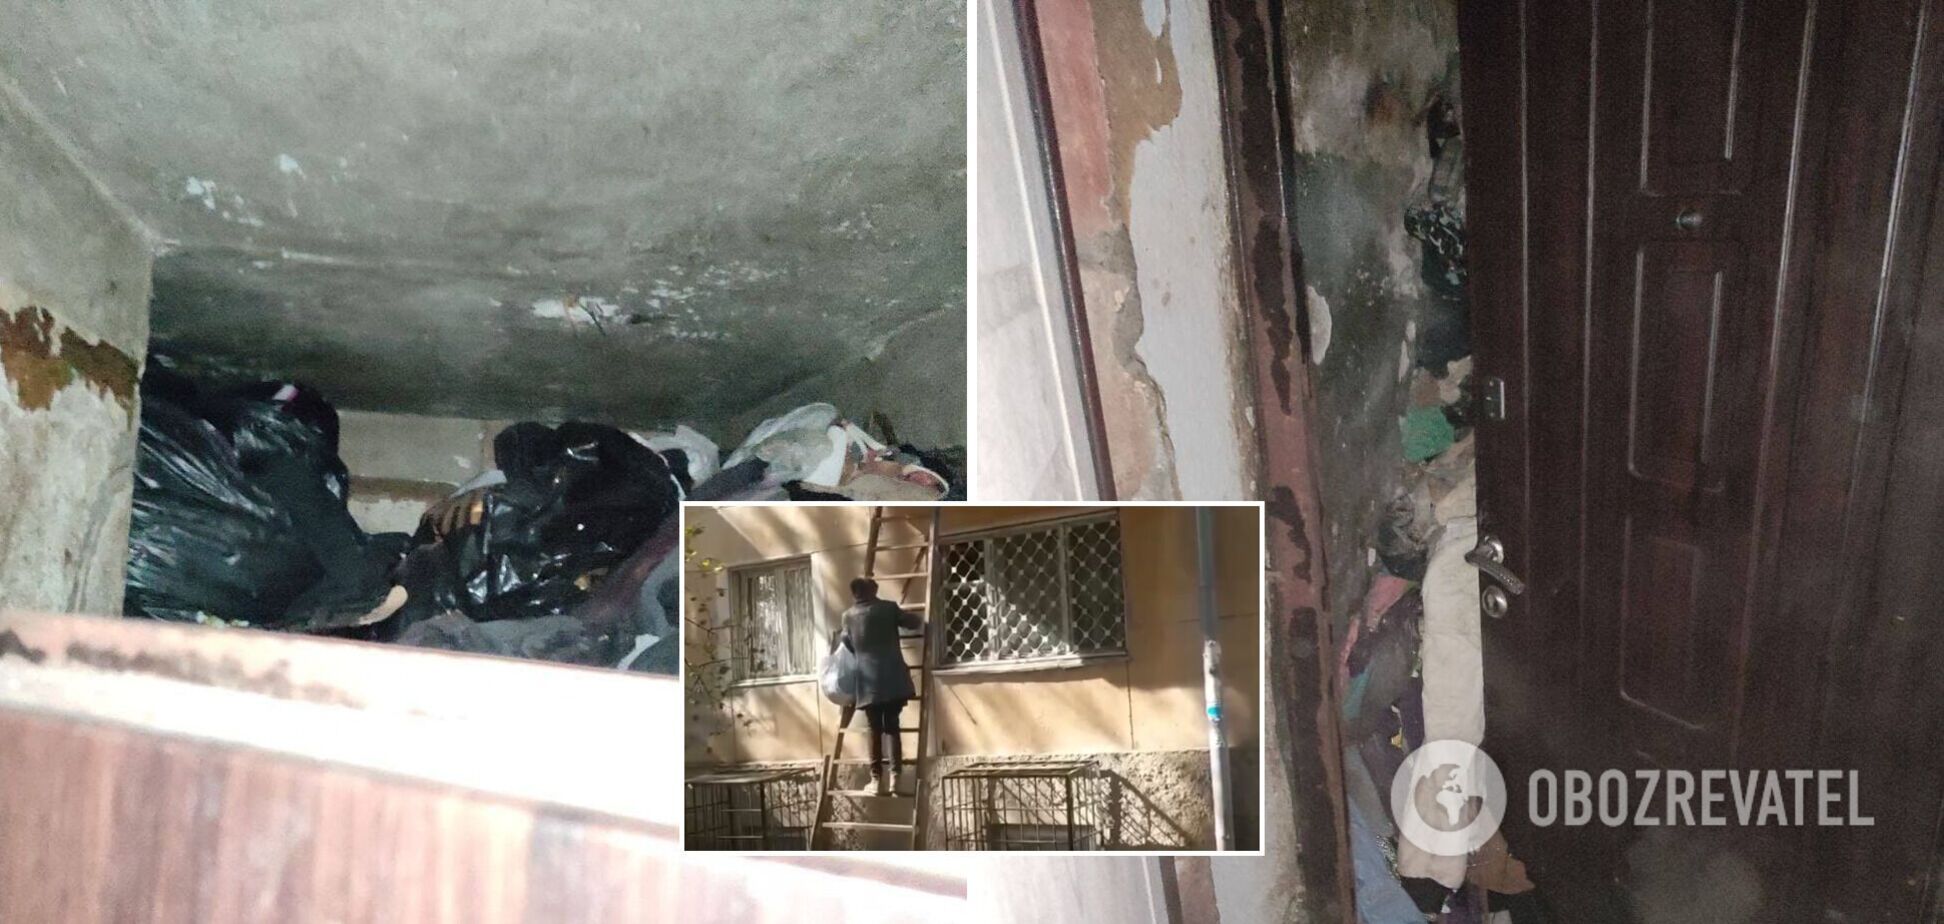 Забирается домой через балкон на втором этаже: в Одессе женщина превратила свою квартиру в свалку. Фото и видео